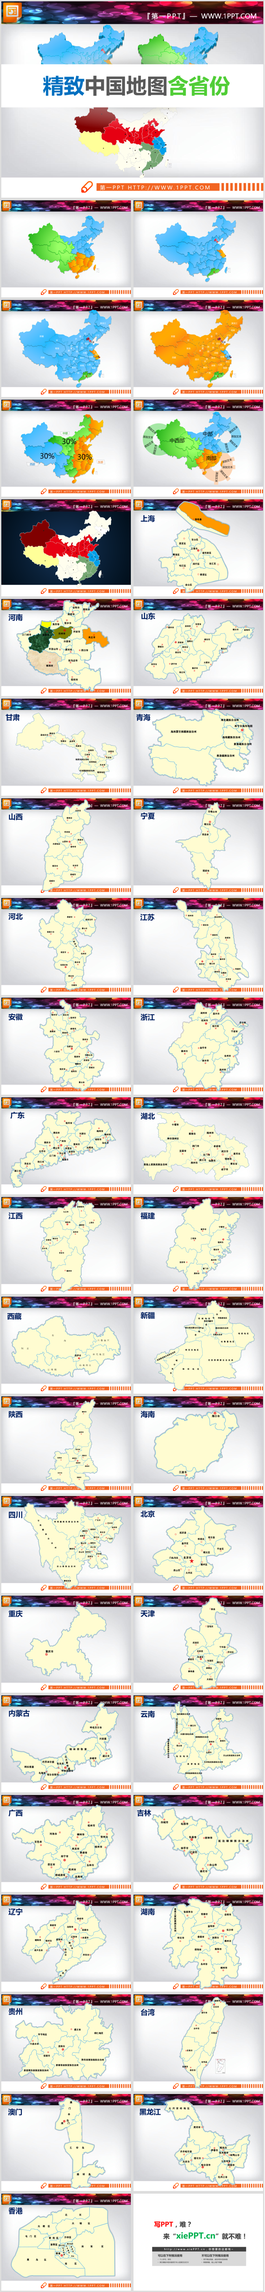 超級完整詳細的包含各省份的中國地圖PPT模板圖表素材